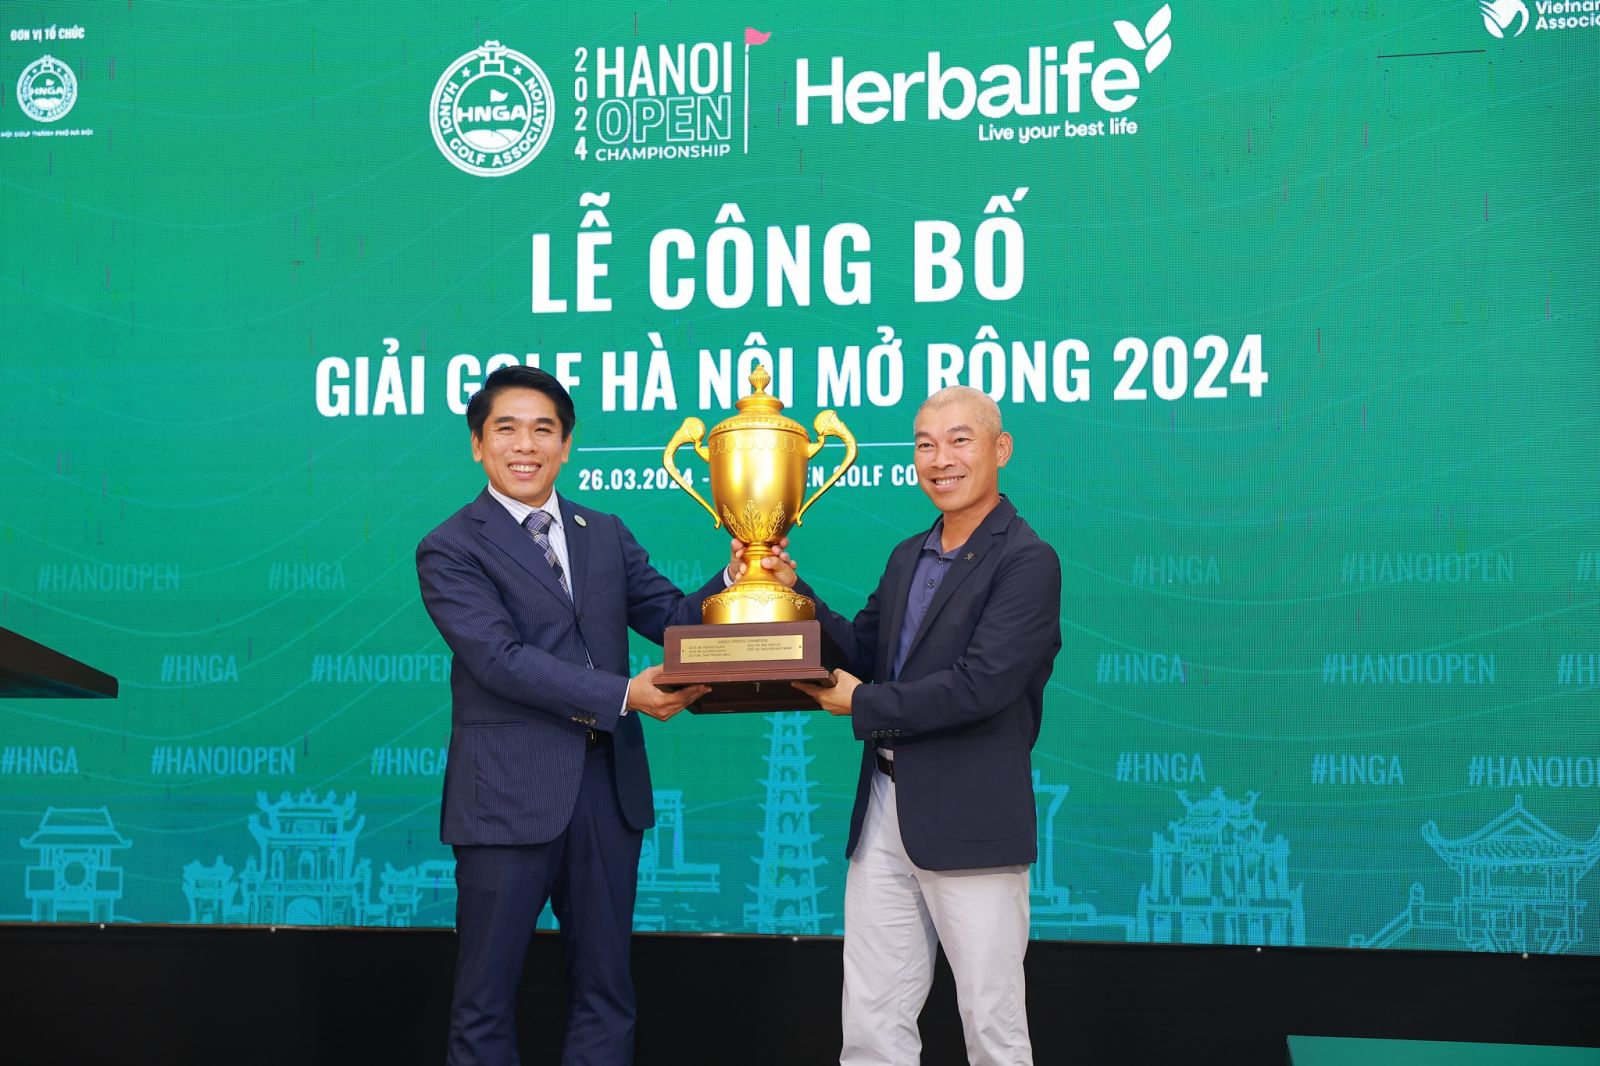 Golfer Chuyên Nghiệp Có Cơ Hội giành 500 Triệu Đồng Tiền Thưởng Tại Giải Golf Hà Nội Mở Rộng 2024 